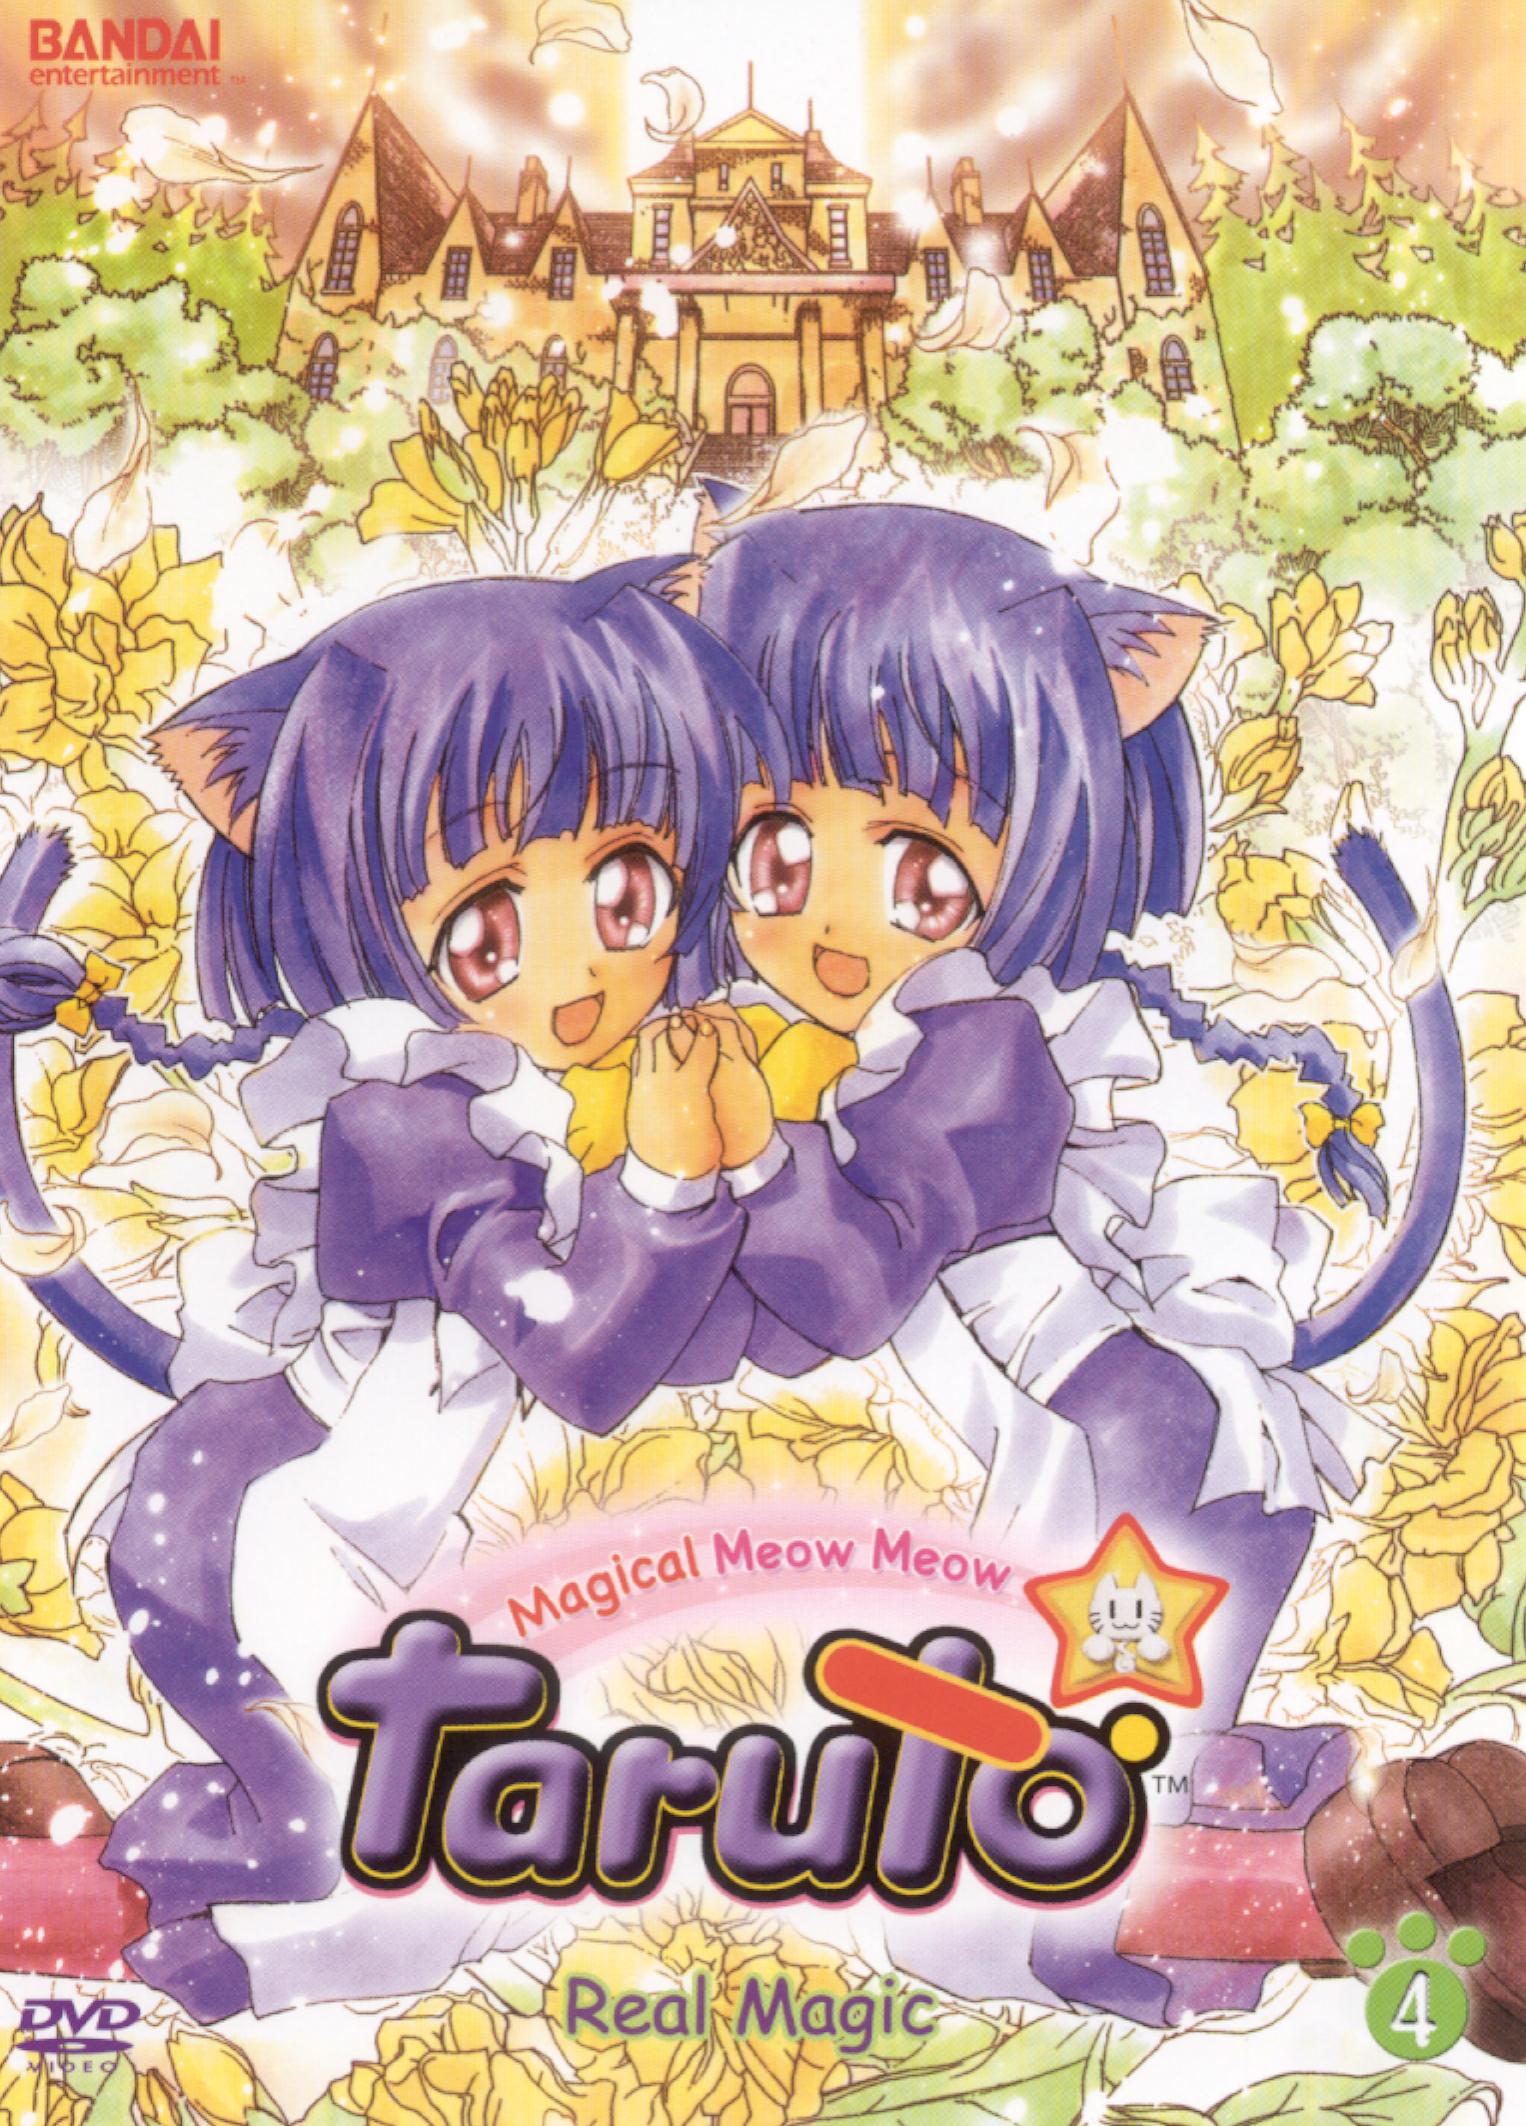 Magical meow meow taruto